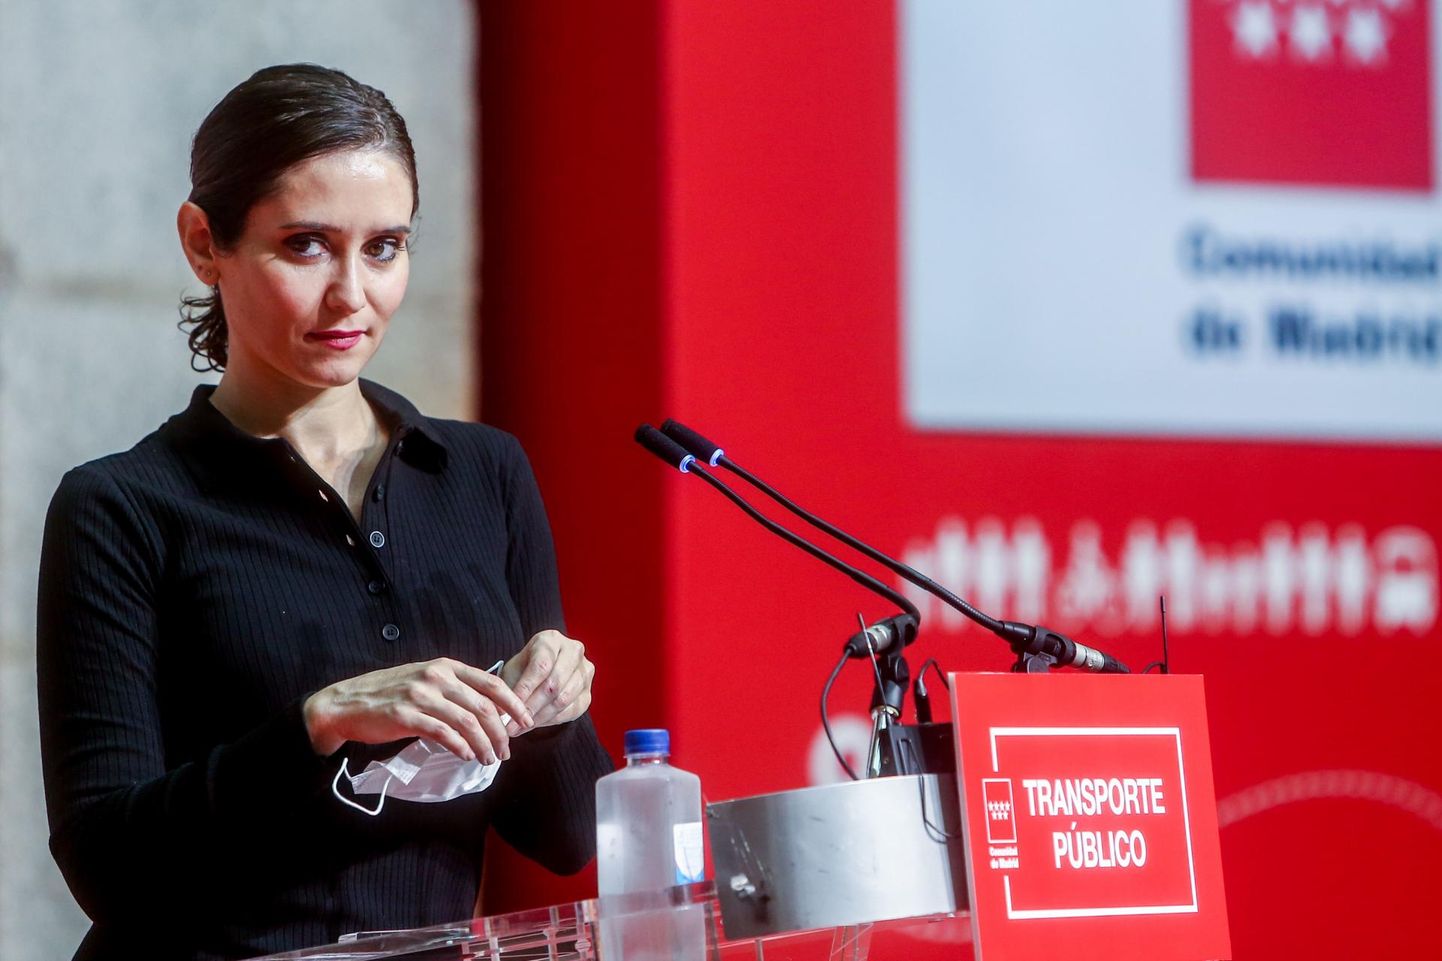 Isabel Díaz Ayuso on poliitiliselt ebakorrektne, polariseeriv ja populistlik, kuid paljude silmis on ta karismaatiline juht. 